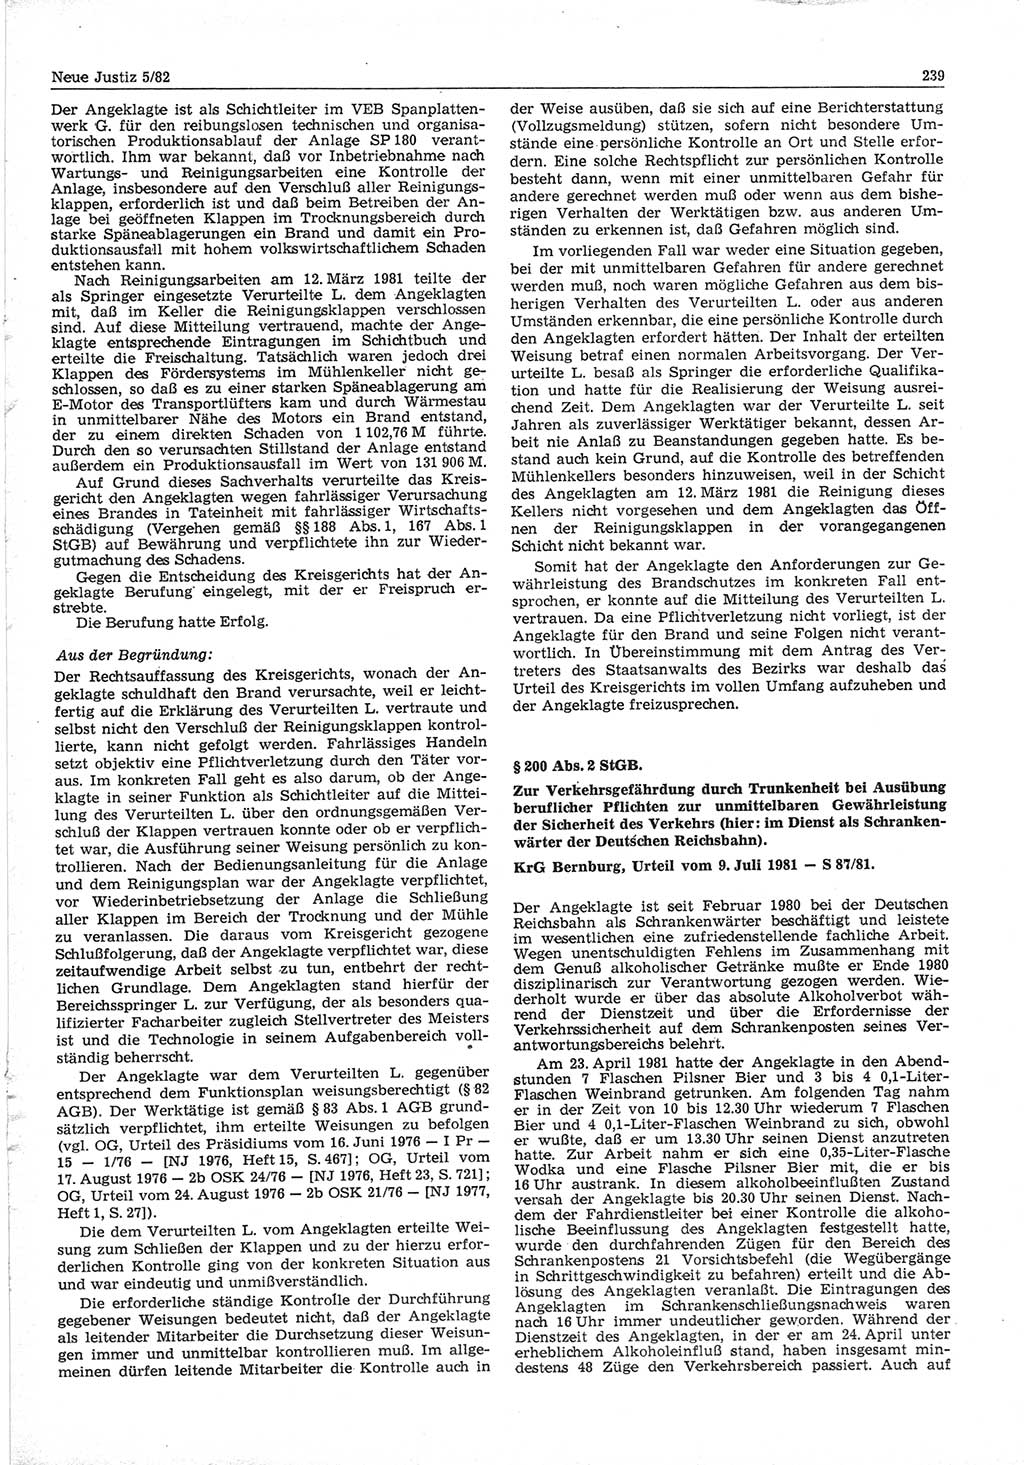 Neue Justiz (NJ), Zeitschrift für sozialistisches Recht und Gesetzlichkeit [Deutsche Demokratische Republik (DDR)], 36. Jahrgang 1982, Seite 239 (NJ DDR 1982, S. 239)